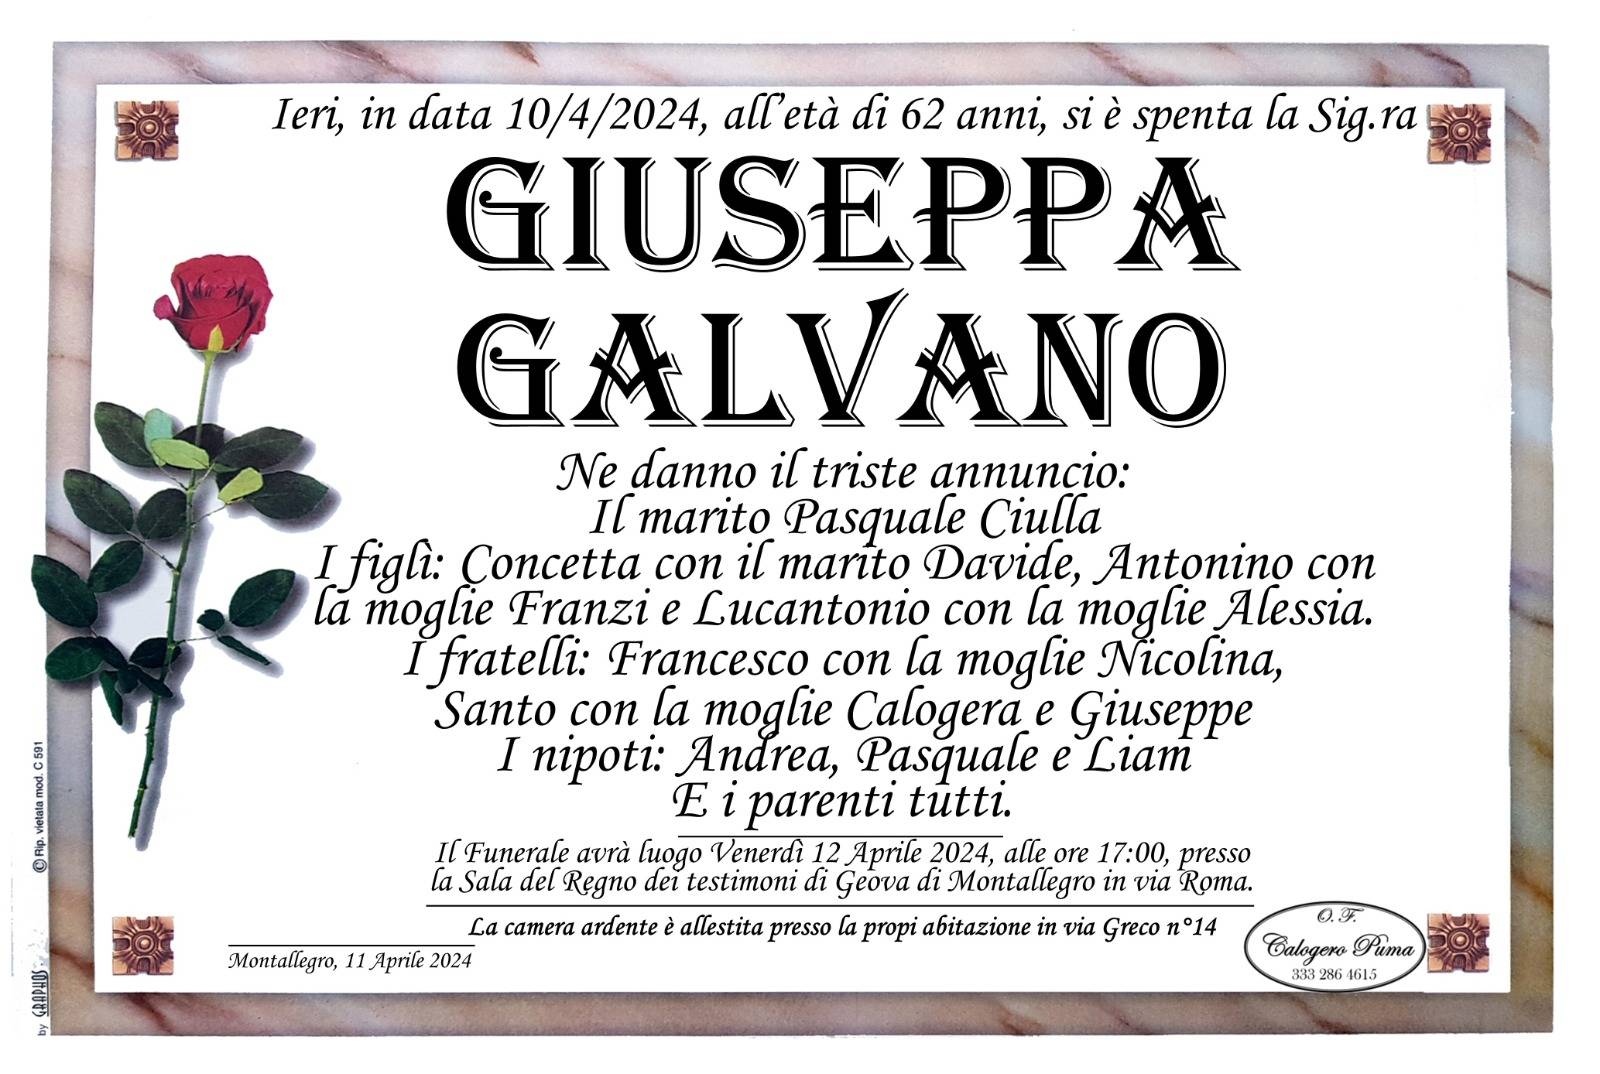 Giuseppa Galvano